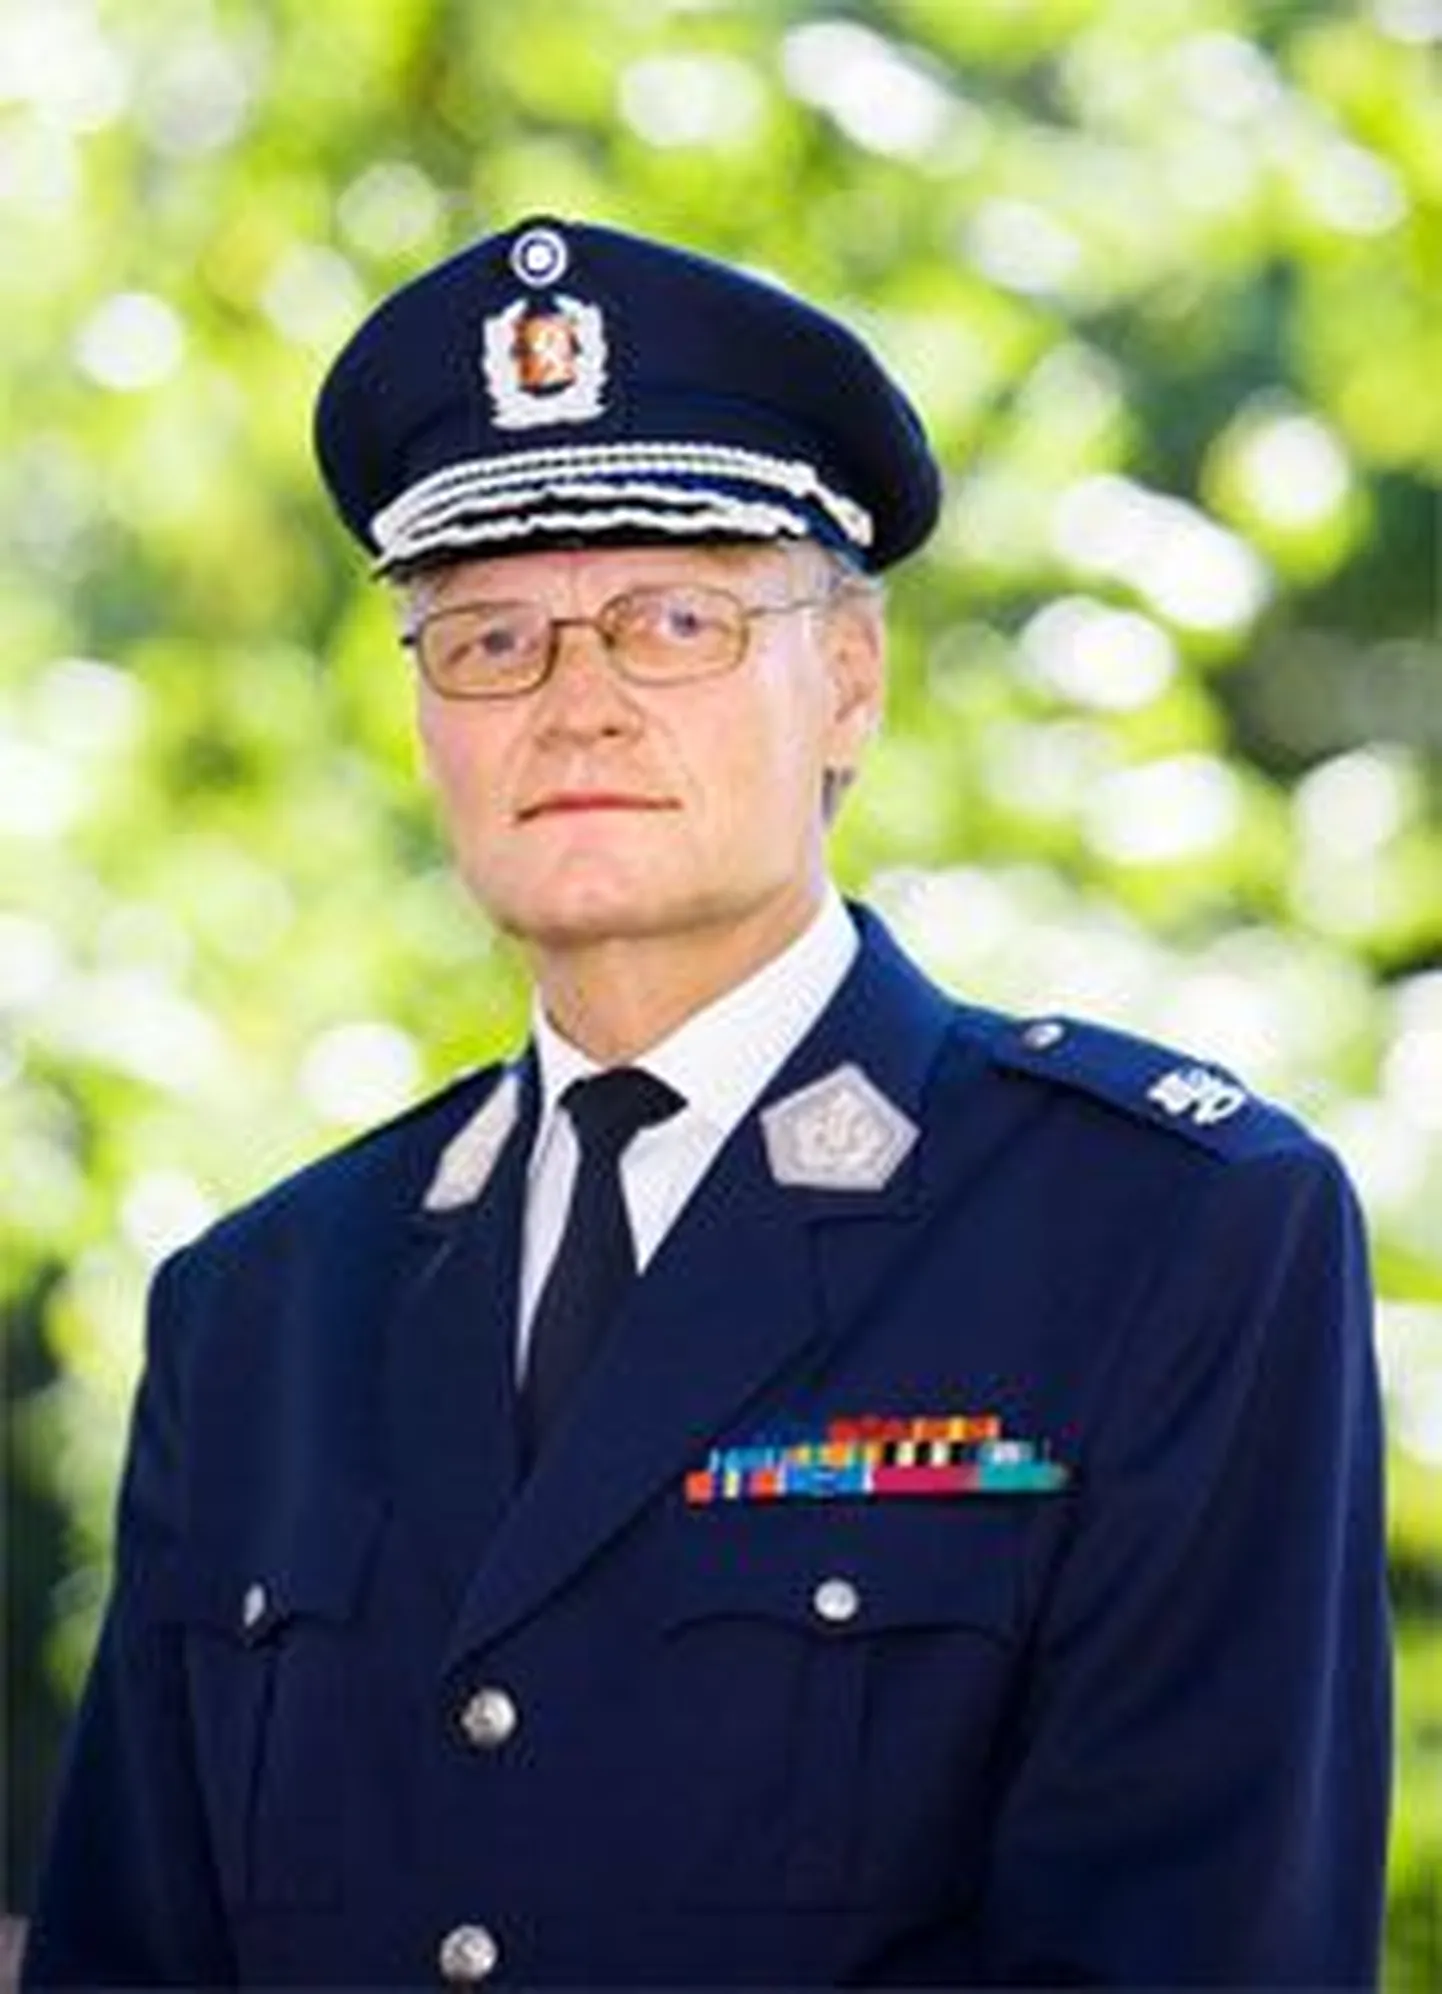 Soome politseipeadirektor Mikko Paatero